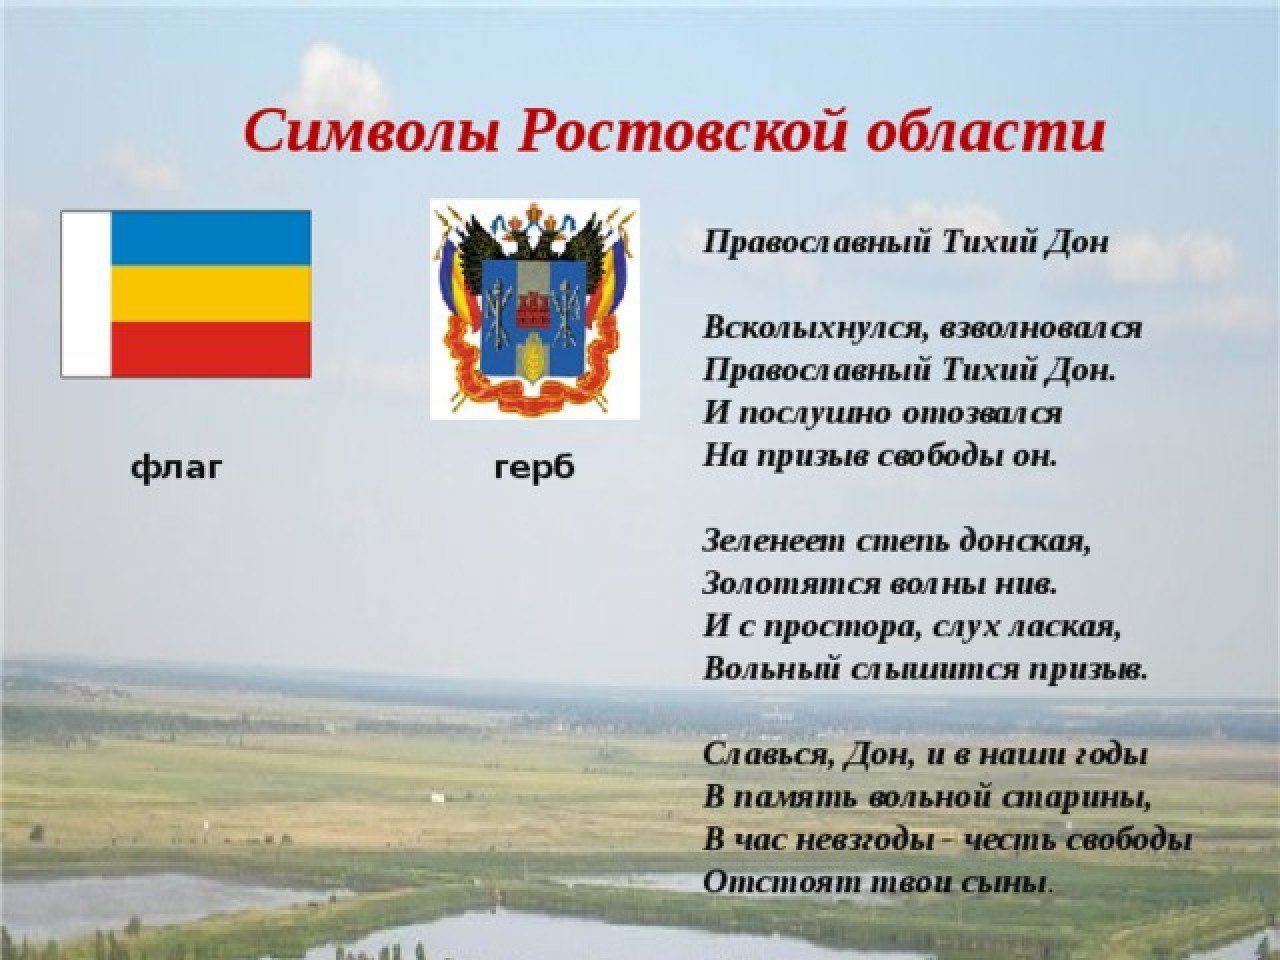 Герб и флаг Ростовской области